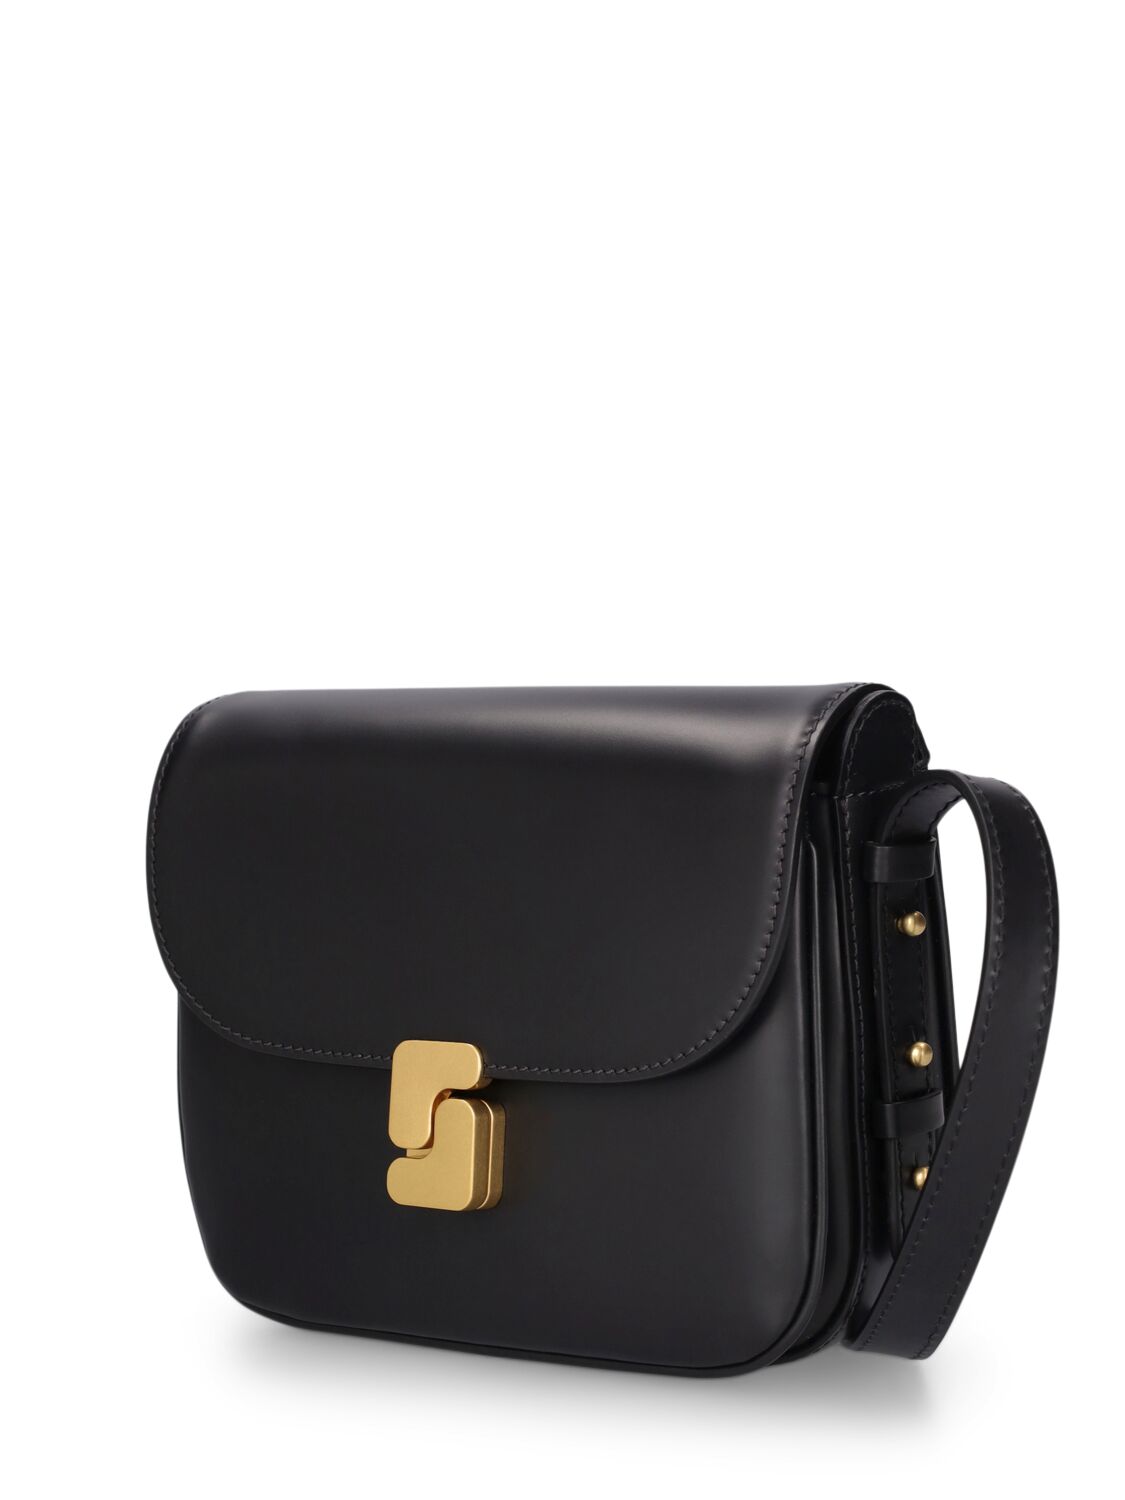 Shop Soeur Mini Bellissima Leather Shoulder Bag In Noir